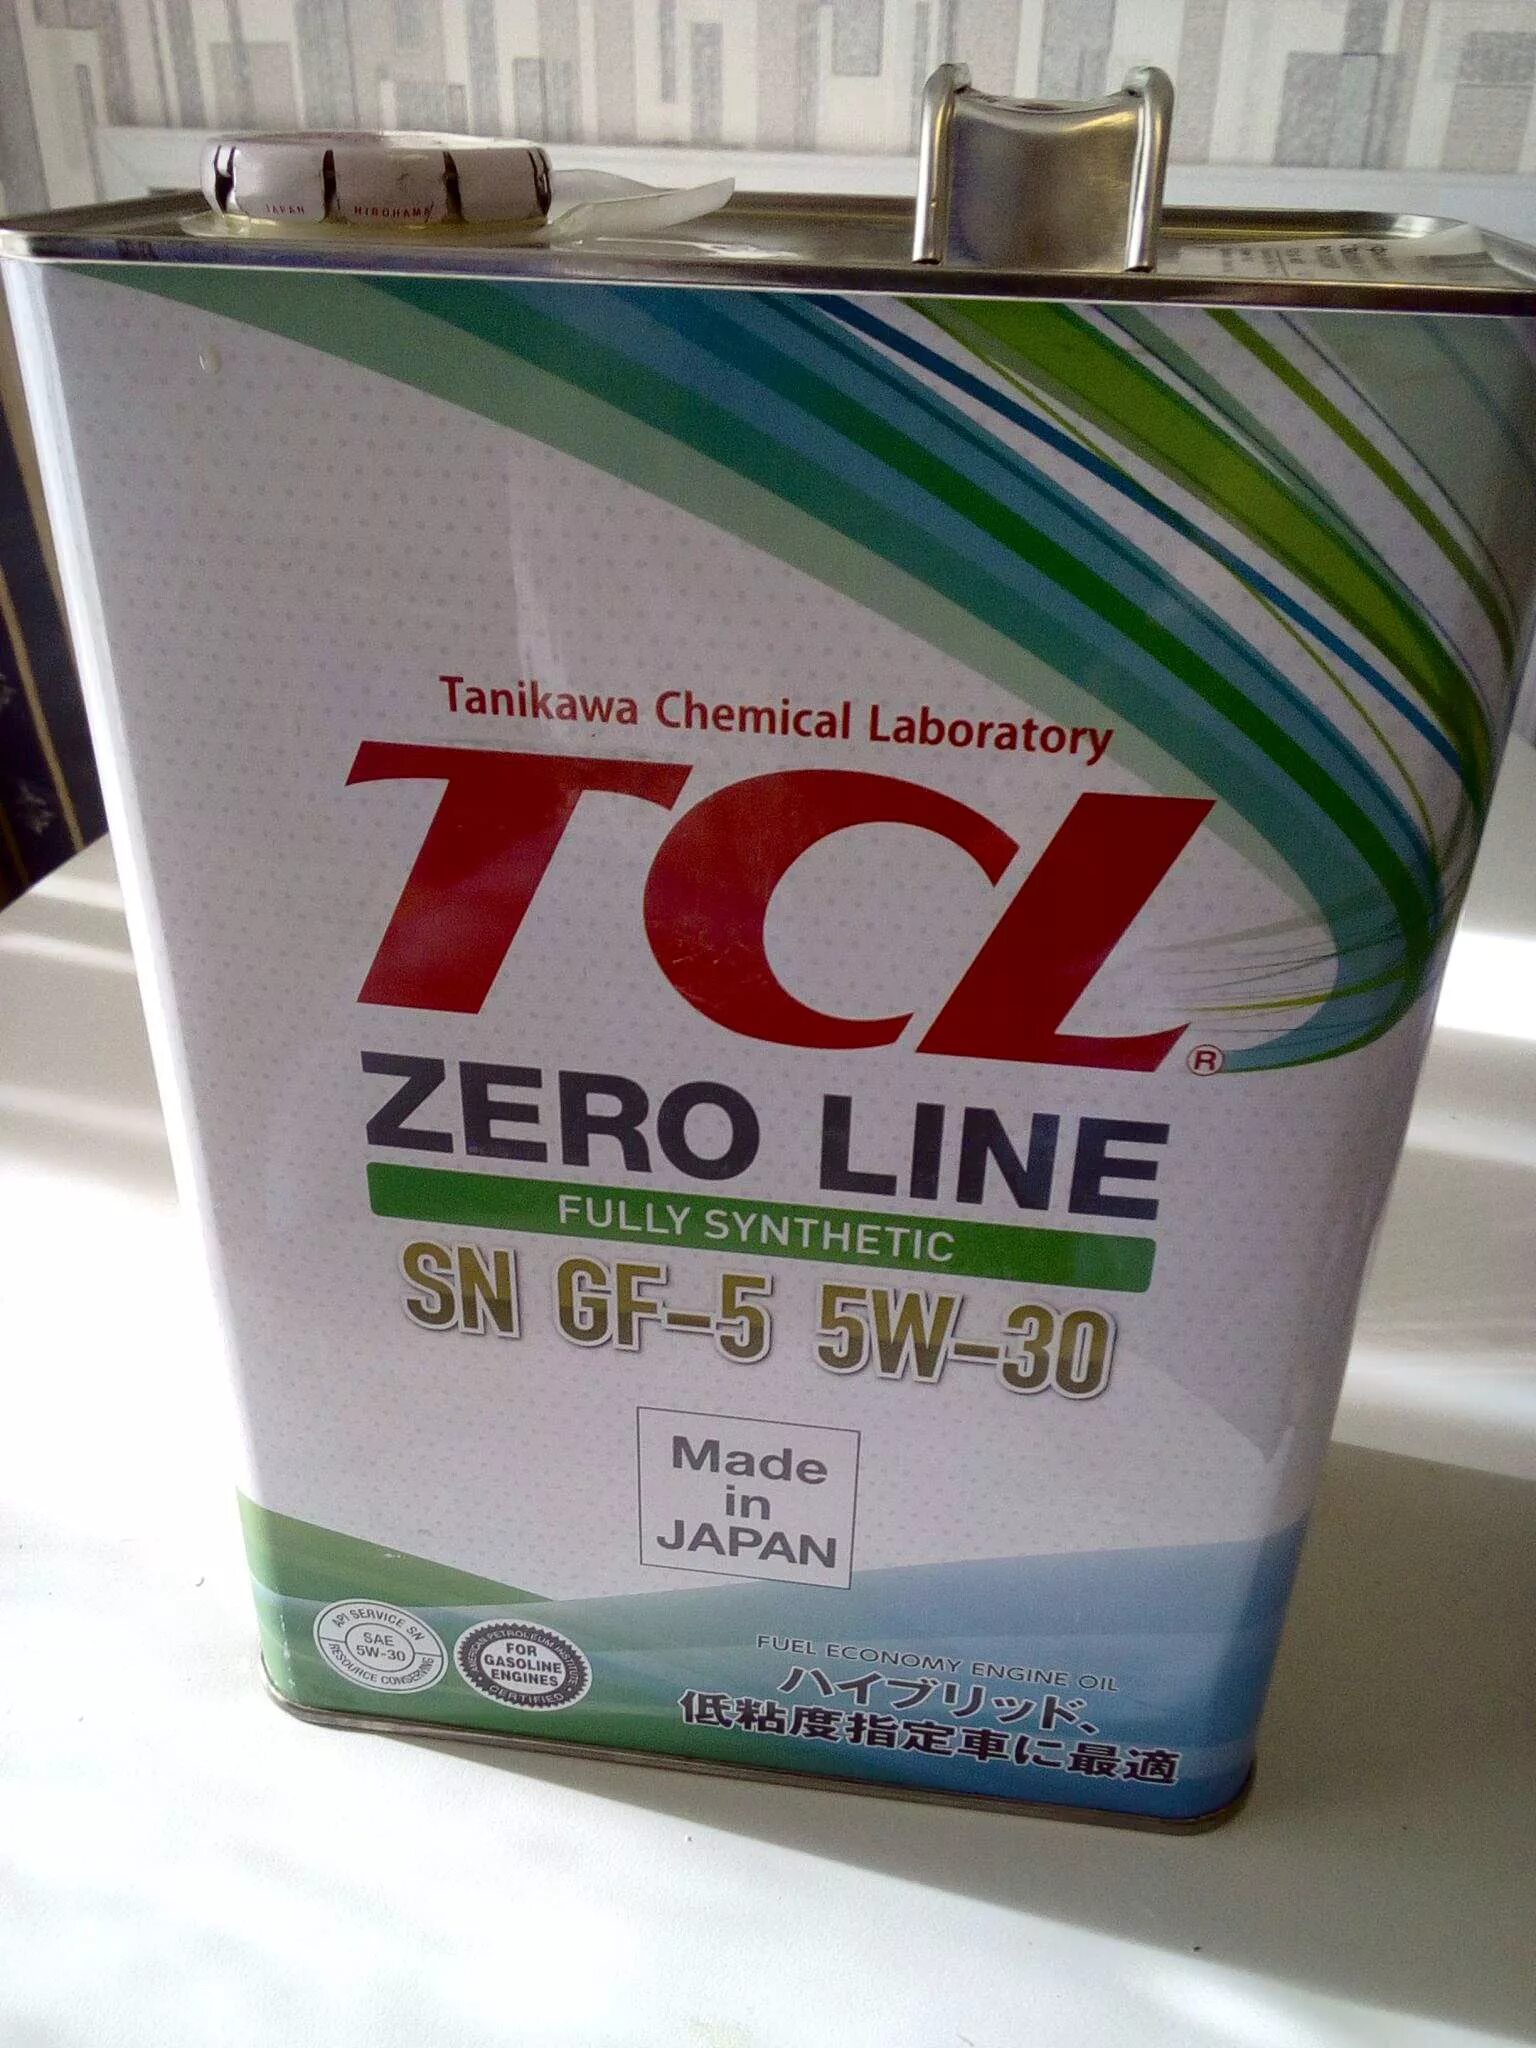 Sn line. TCL Zero line 5w30. Масло TCL Zero line 5w-30. TCL SN gf-5 5w-30. TCL 5w-30 gf-5.